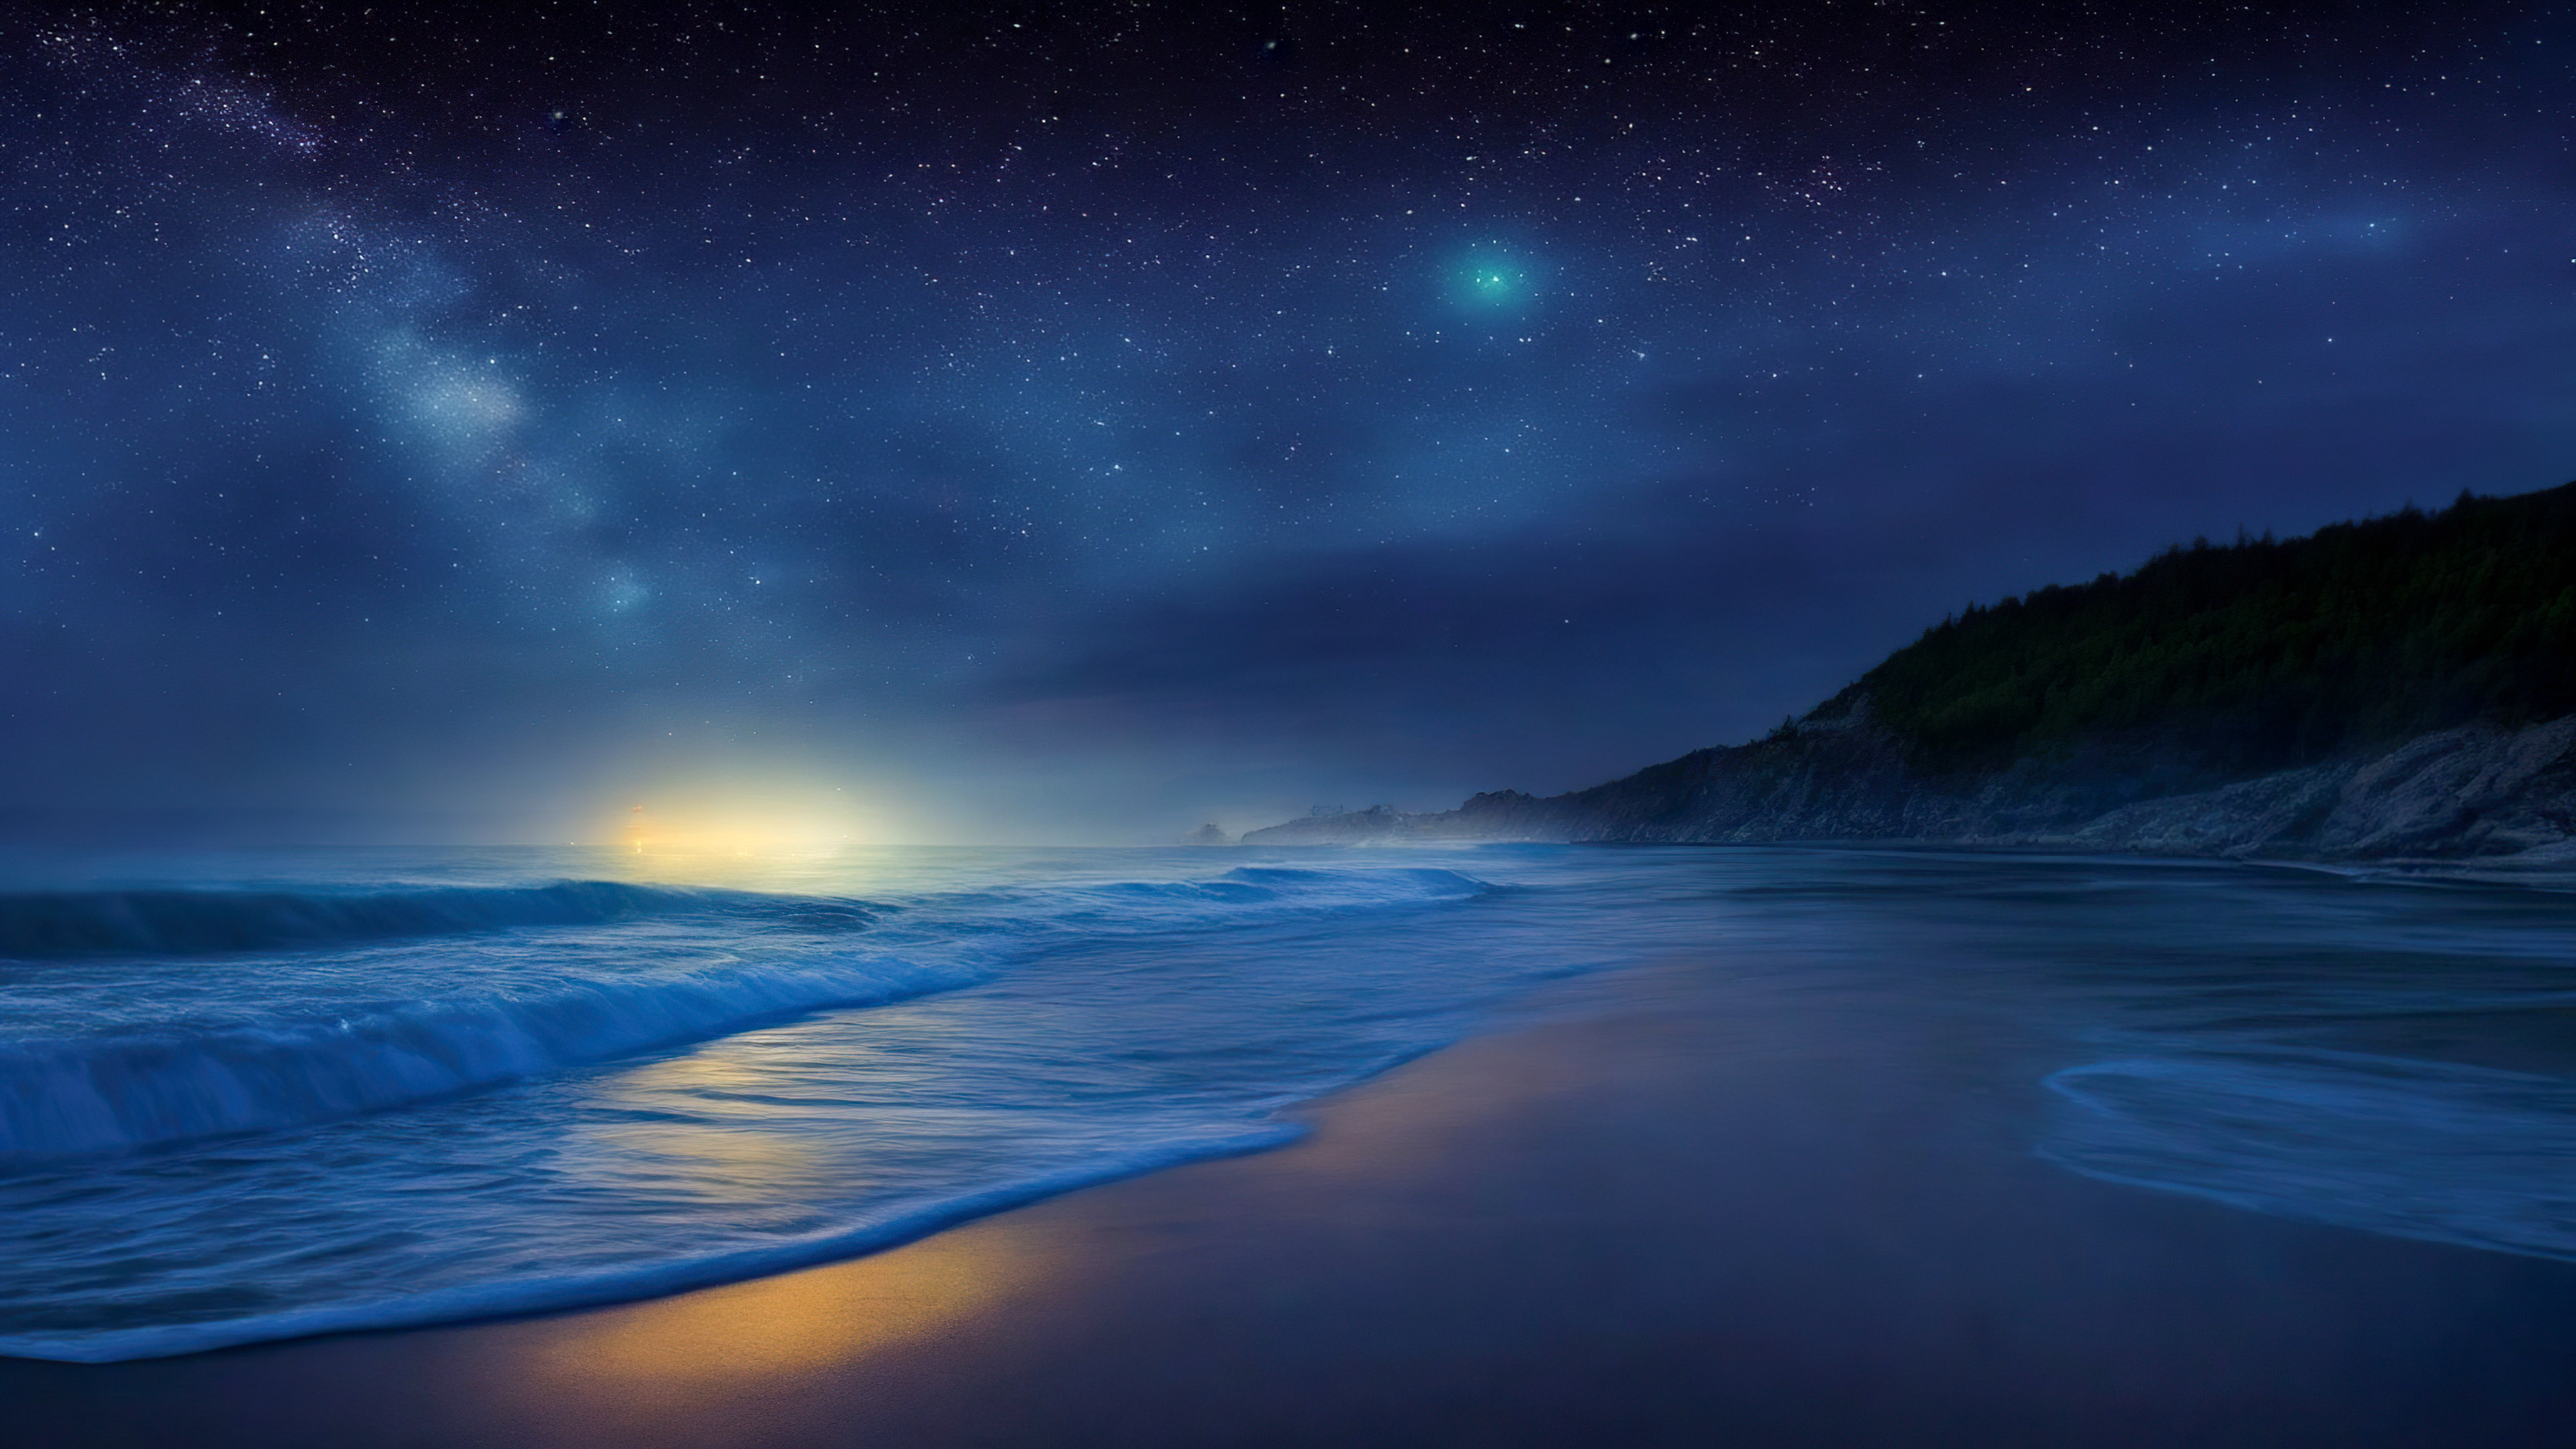 Téléchargez notre fond d'écran, capturant une plage éloignée la nuit, où les vagues rencontrent le rivage sous une toile d'étoiles scintillantes.